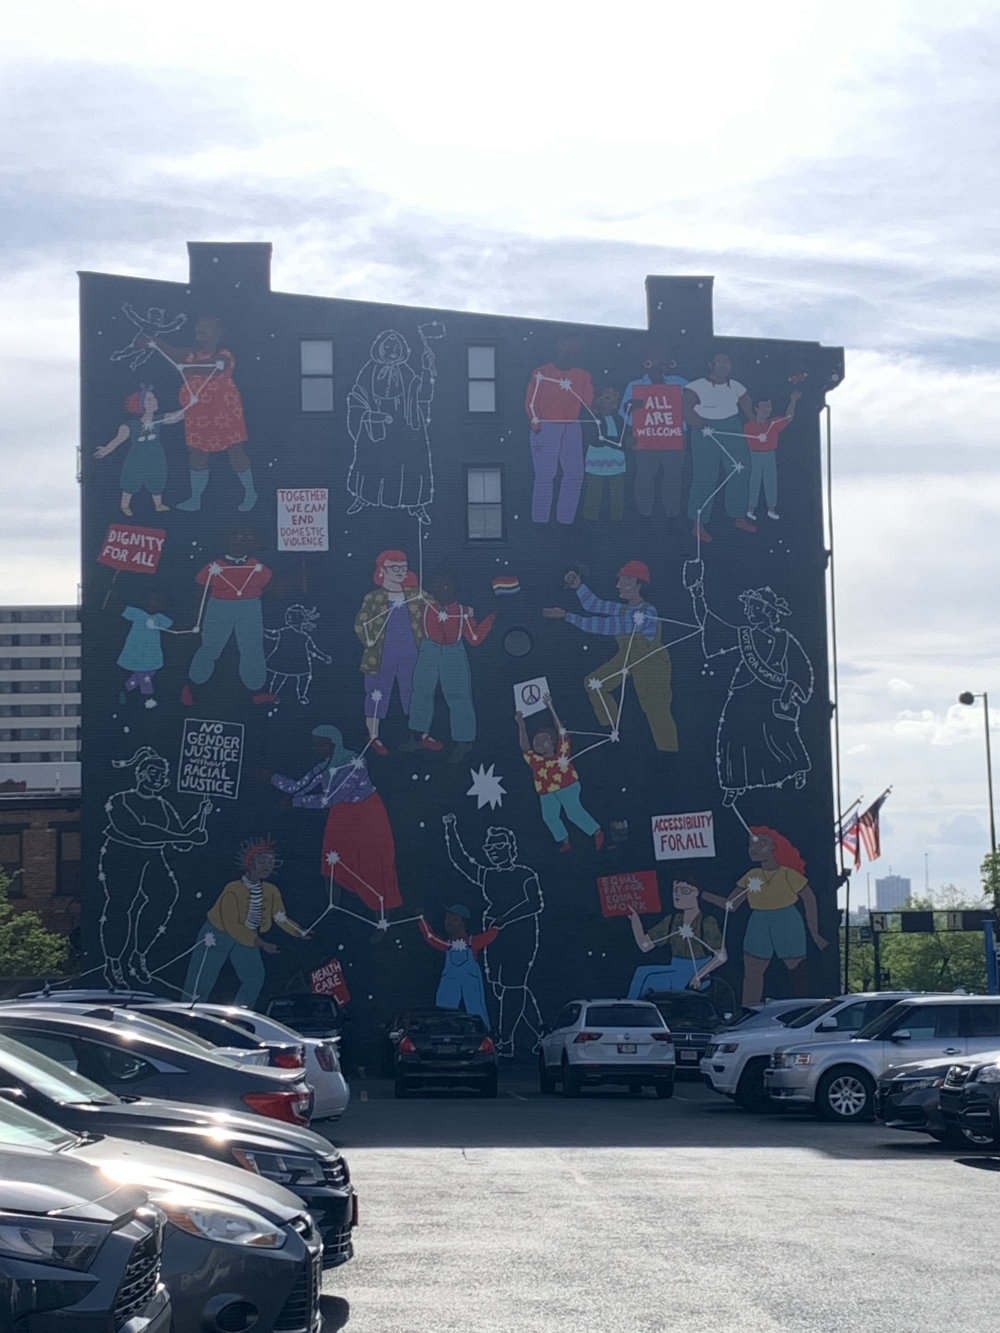 mural in Cincinnati by artist unknown.